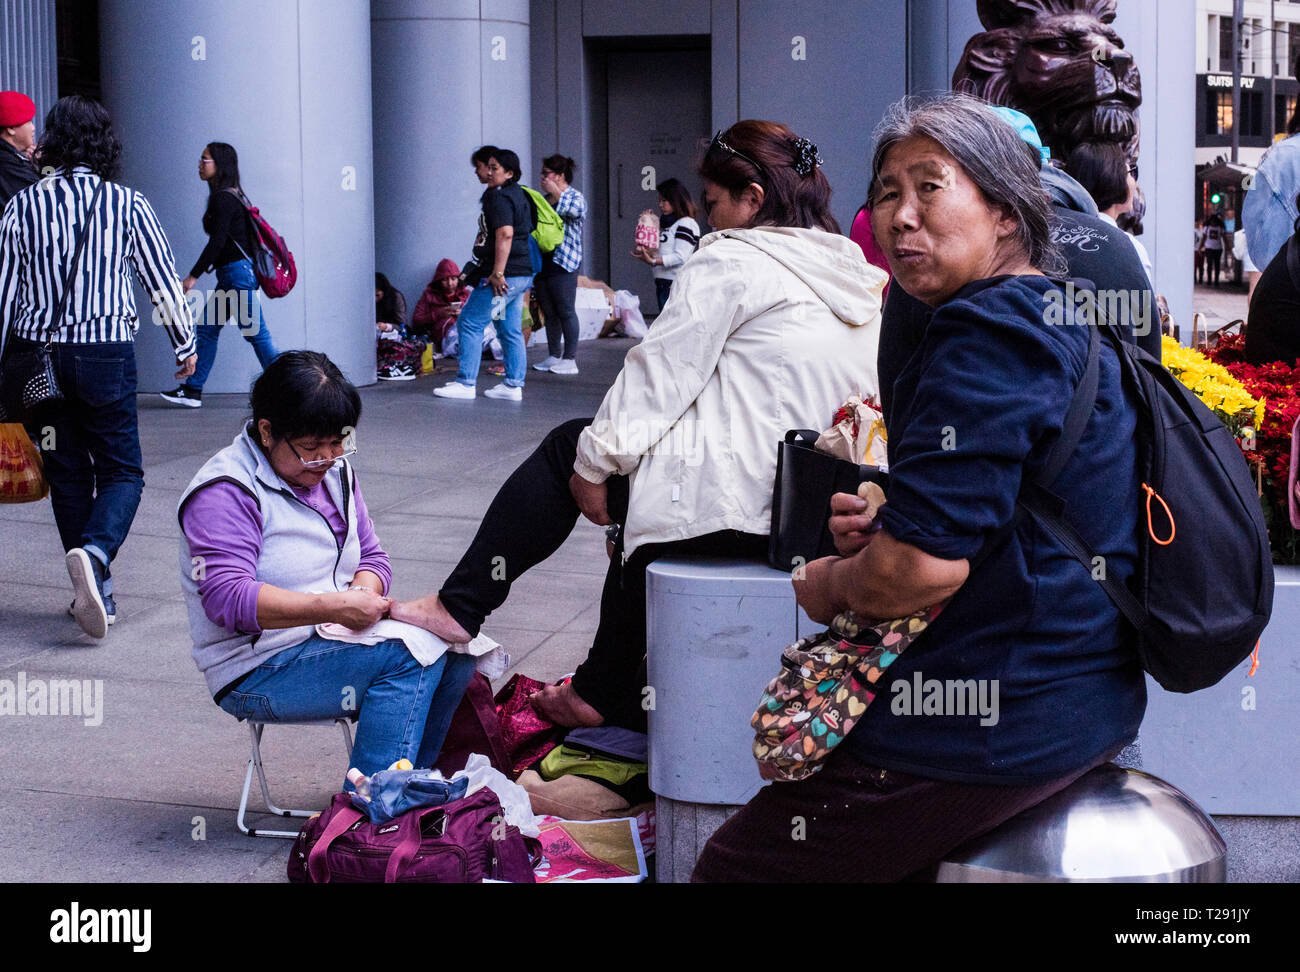 Frau mit Pediküre in verkehrsreichen Straße, ältere Frau im Vordergrund Blick auf Kamera, Kowloon, Hong Kong Stockfoto